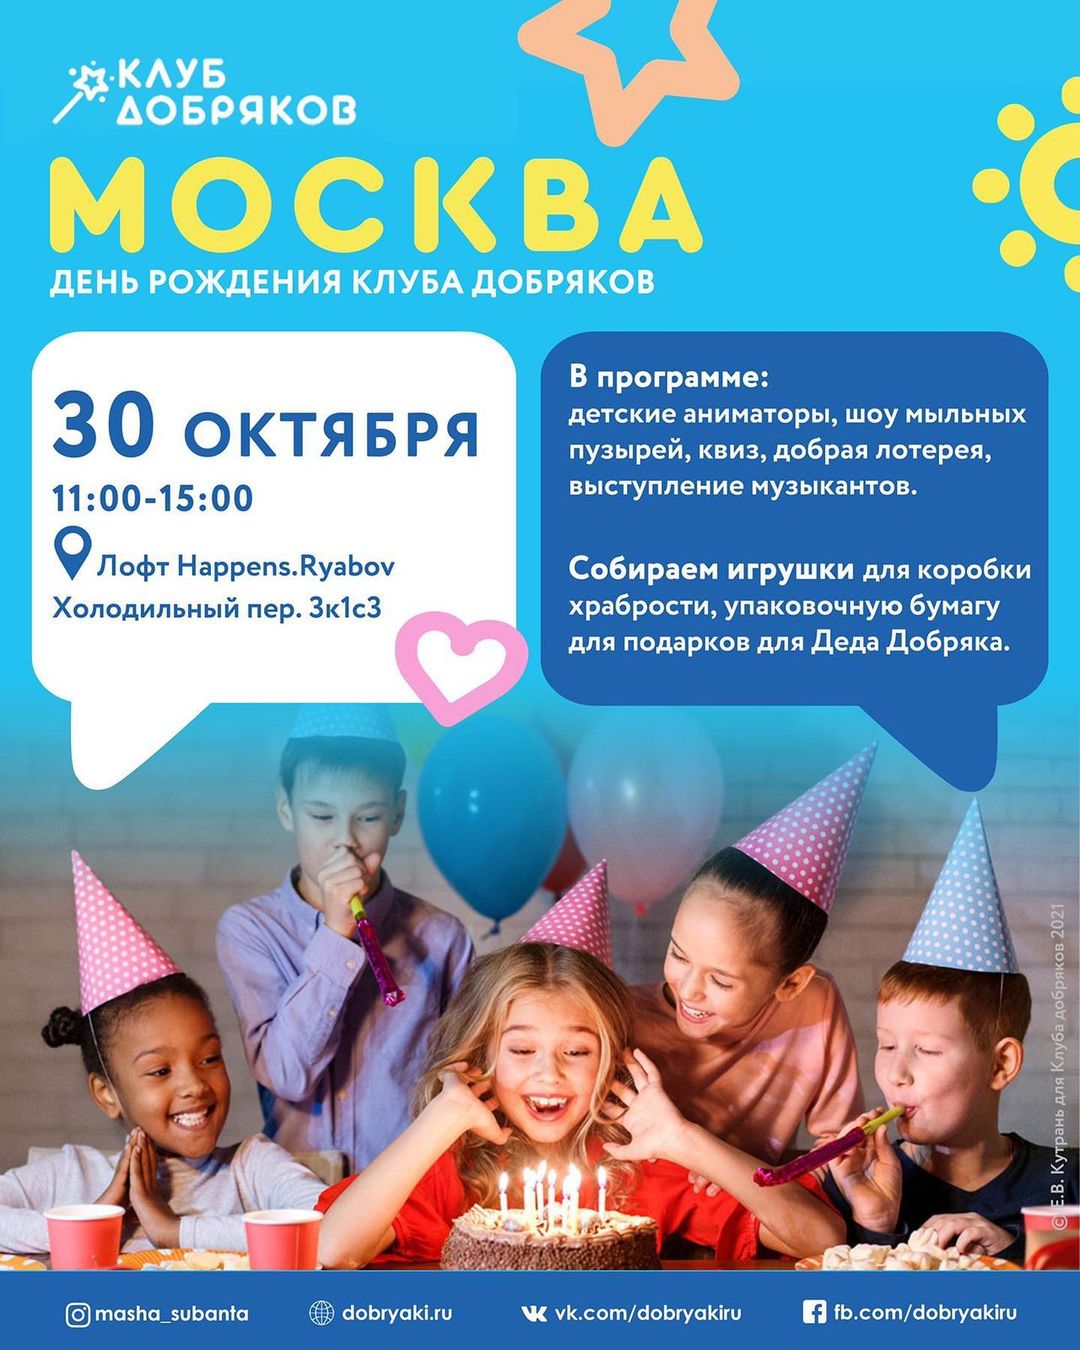 Московские добряки приглашают на день рождения фонда